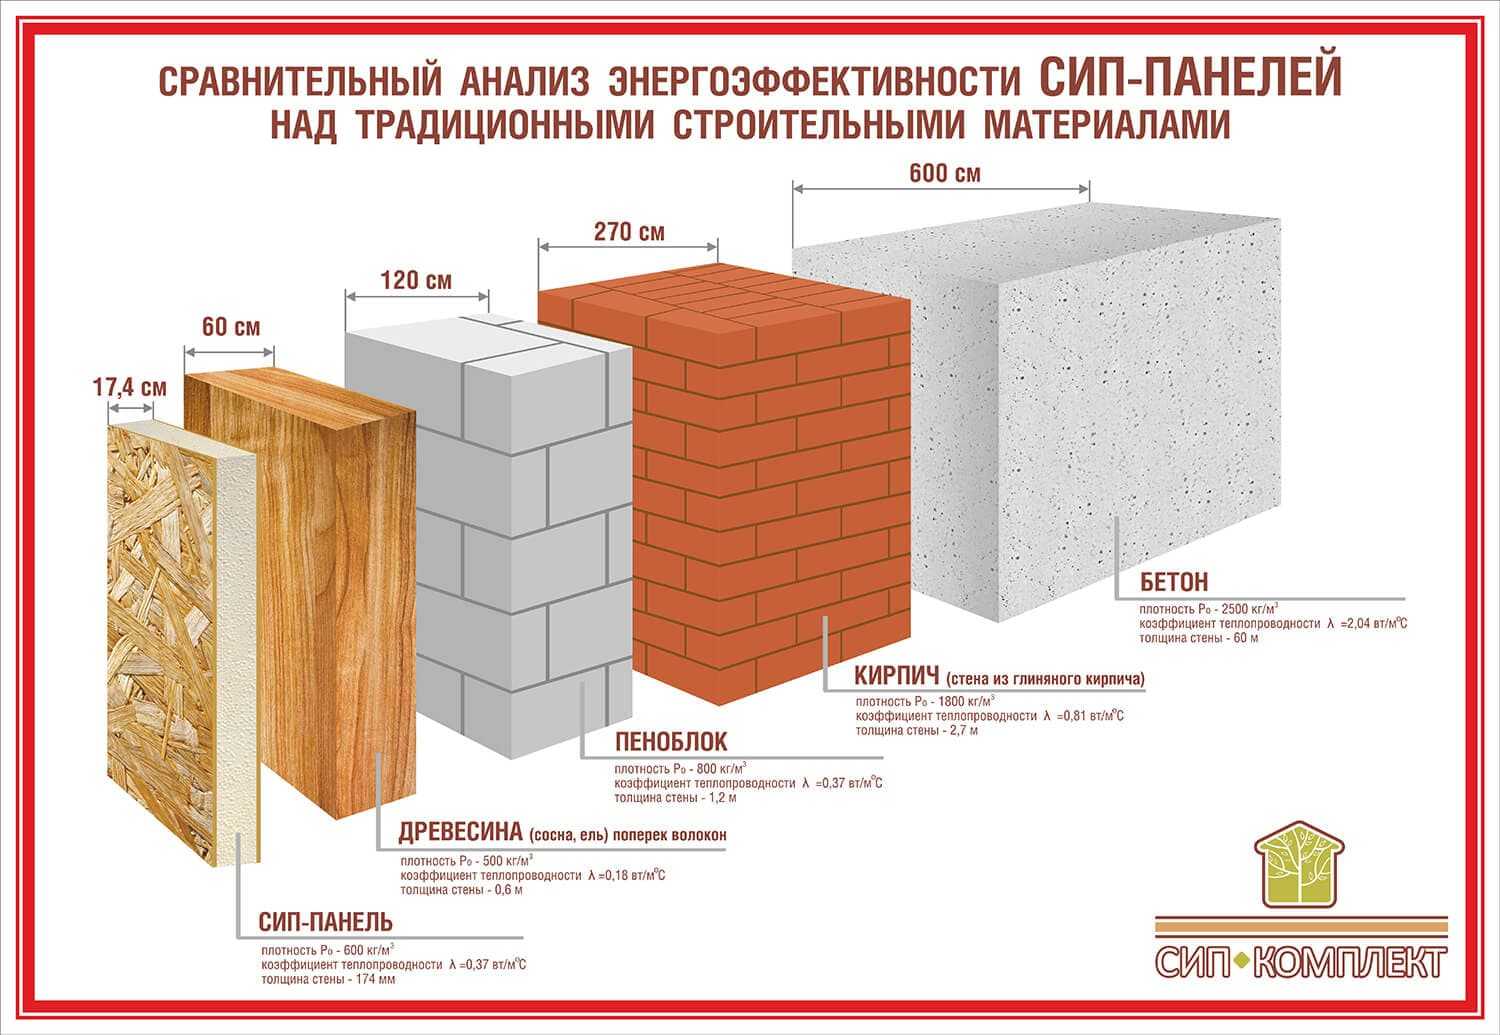 Какие существуют блоки для строительства дома